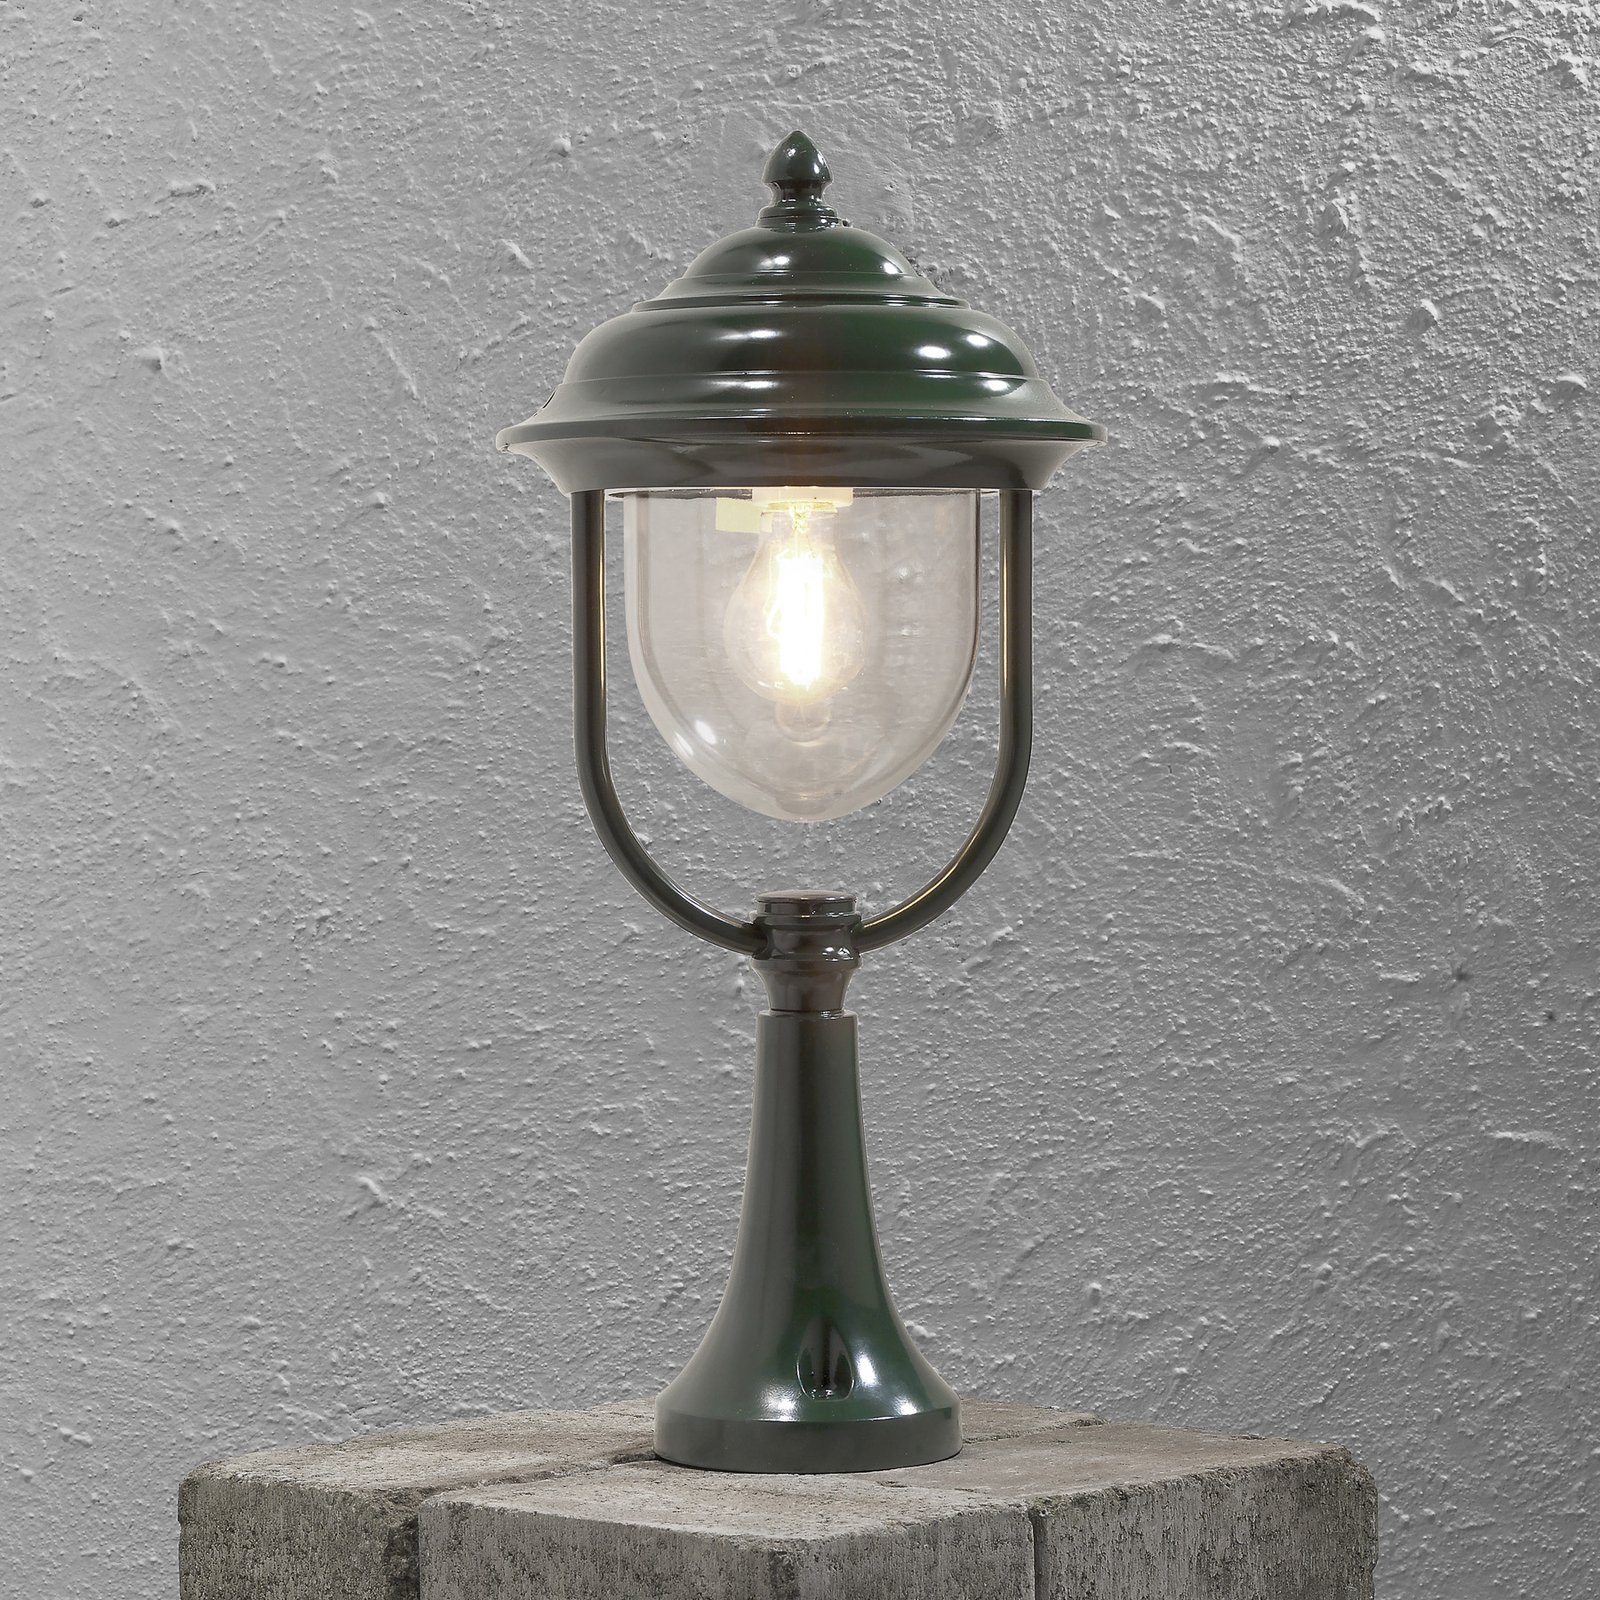 Bellissima lampada con piedistallo Parma, verde